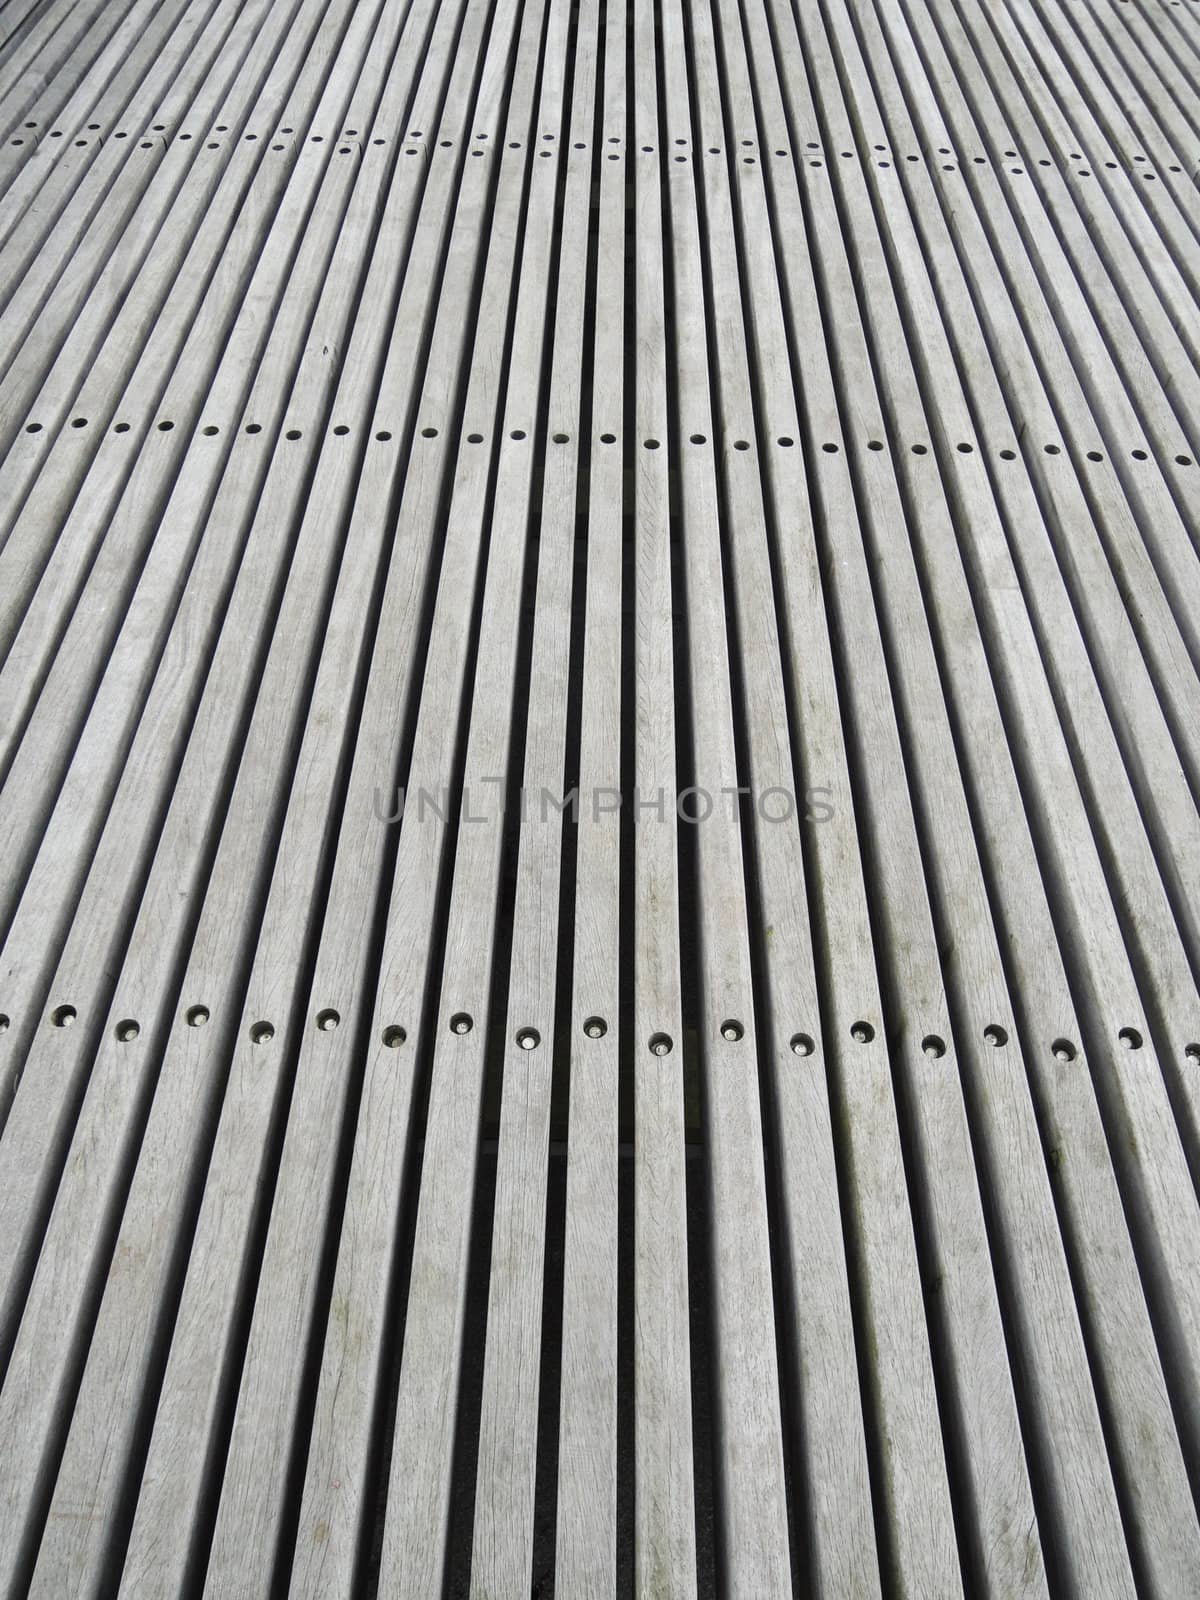 Gray wooden floor